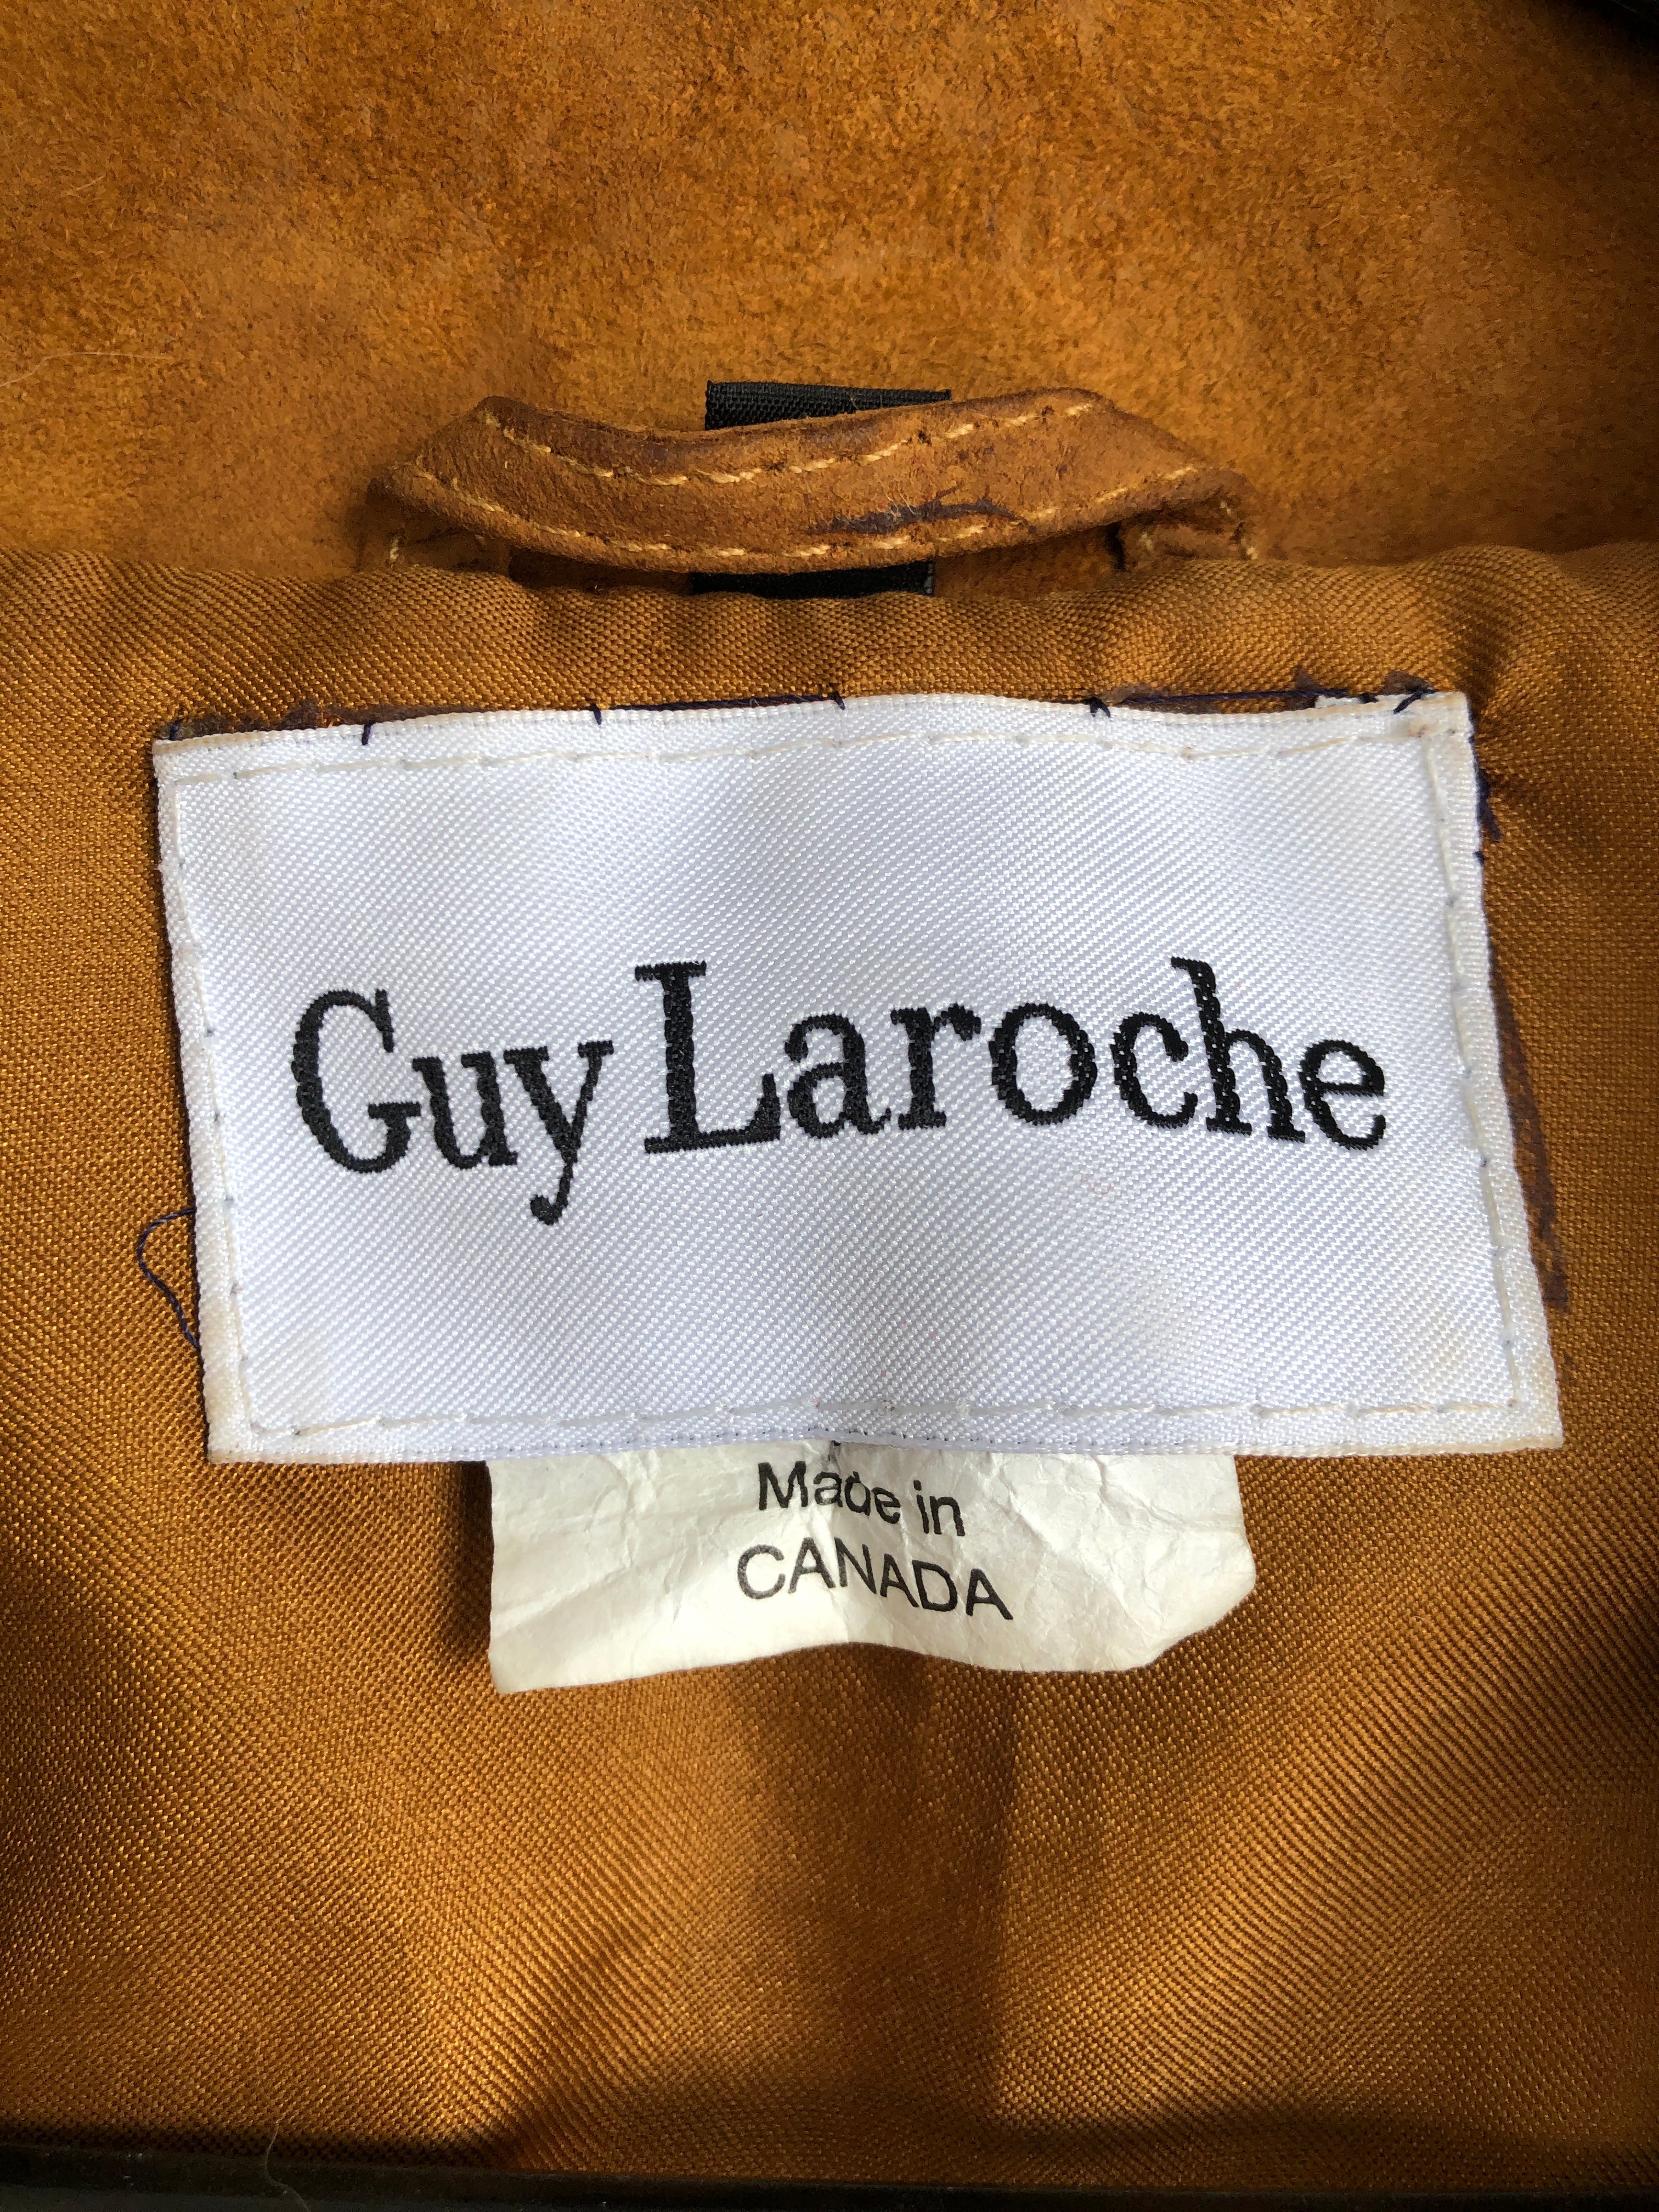 Guy Laroche Woman Handbag Purple Size - Soft Leather In Blue